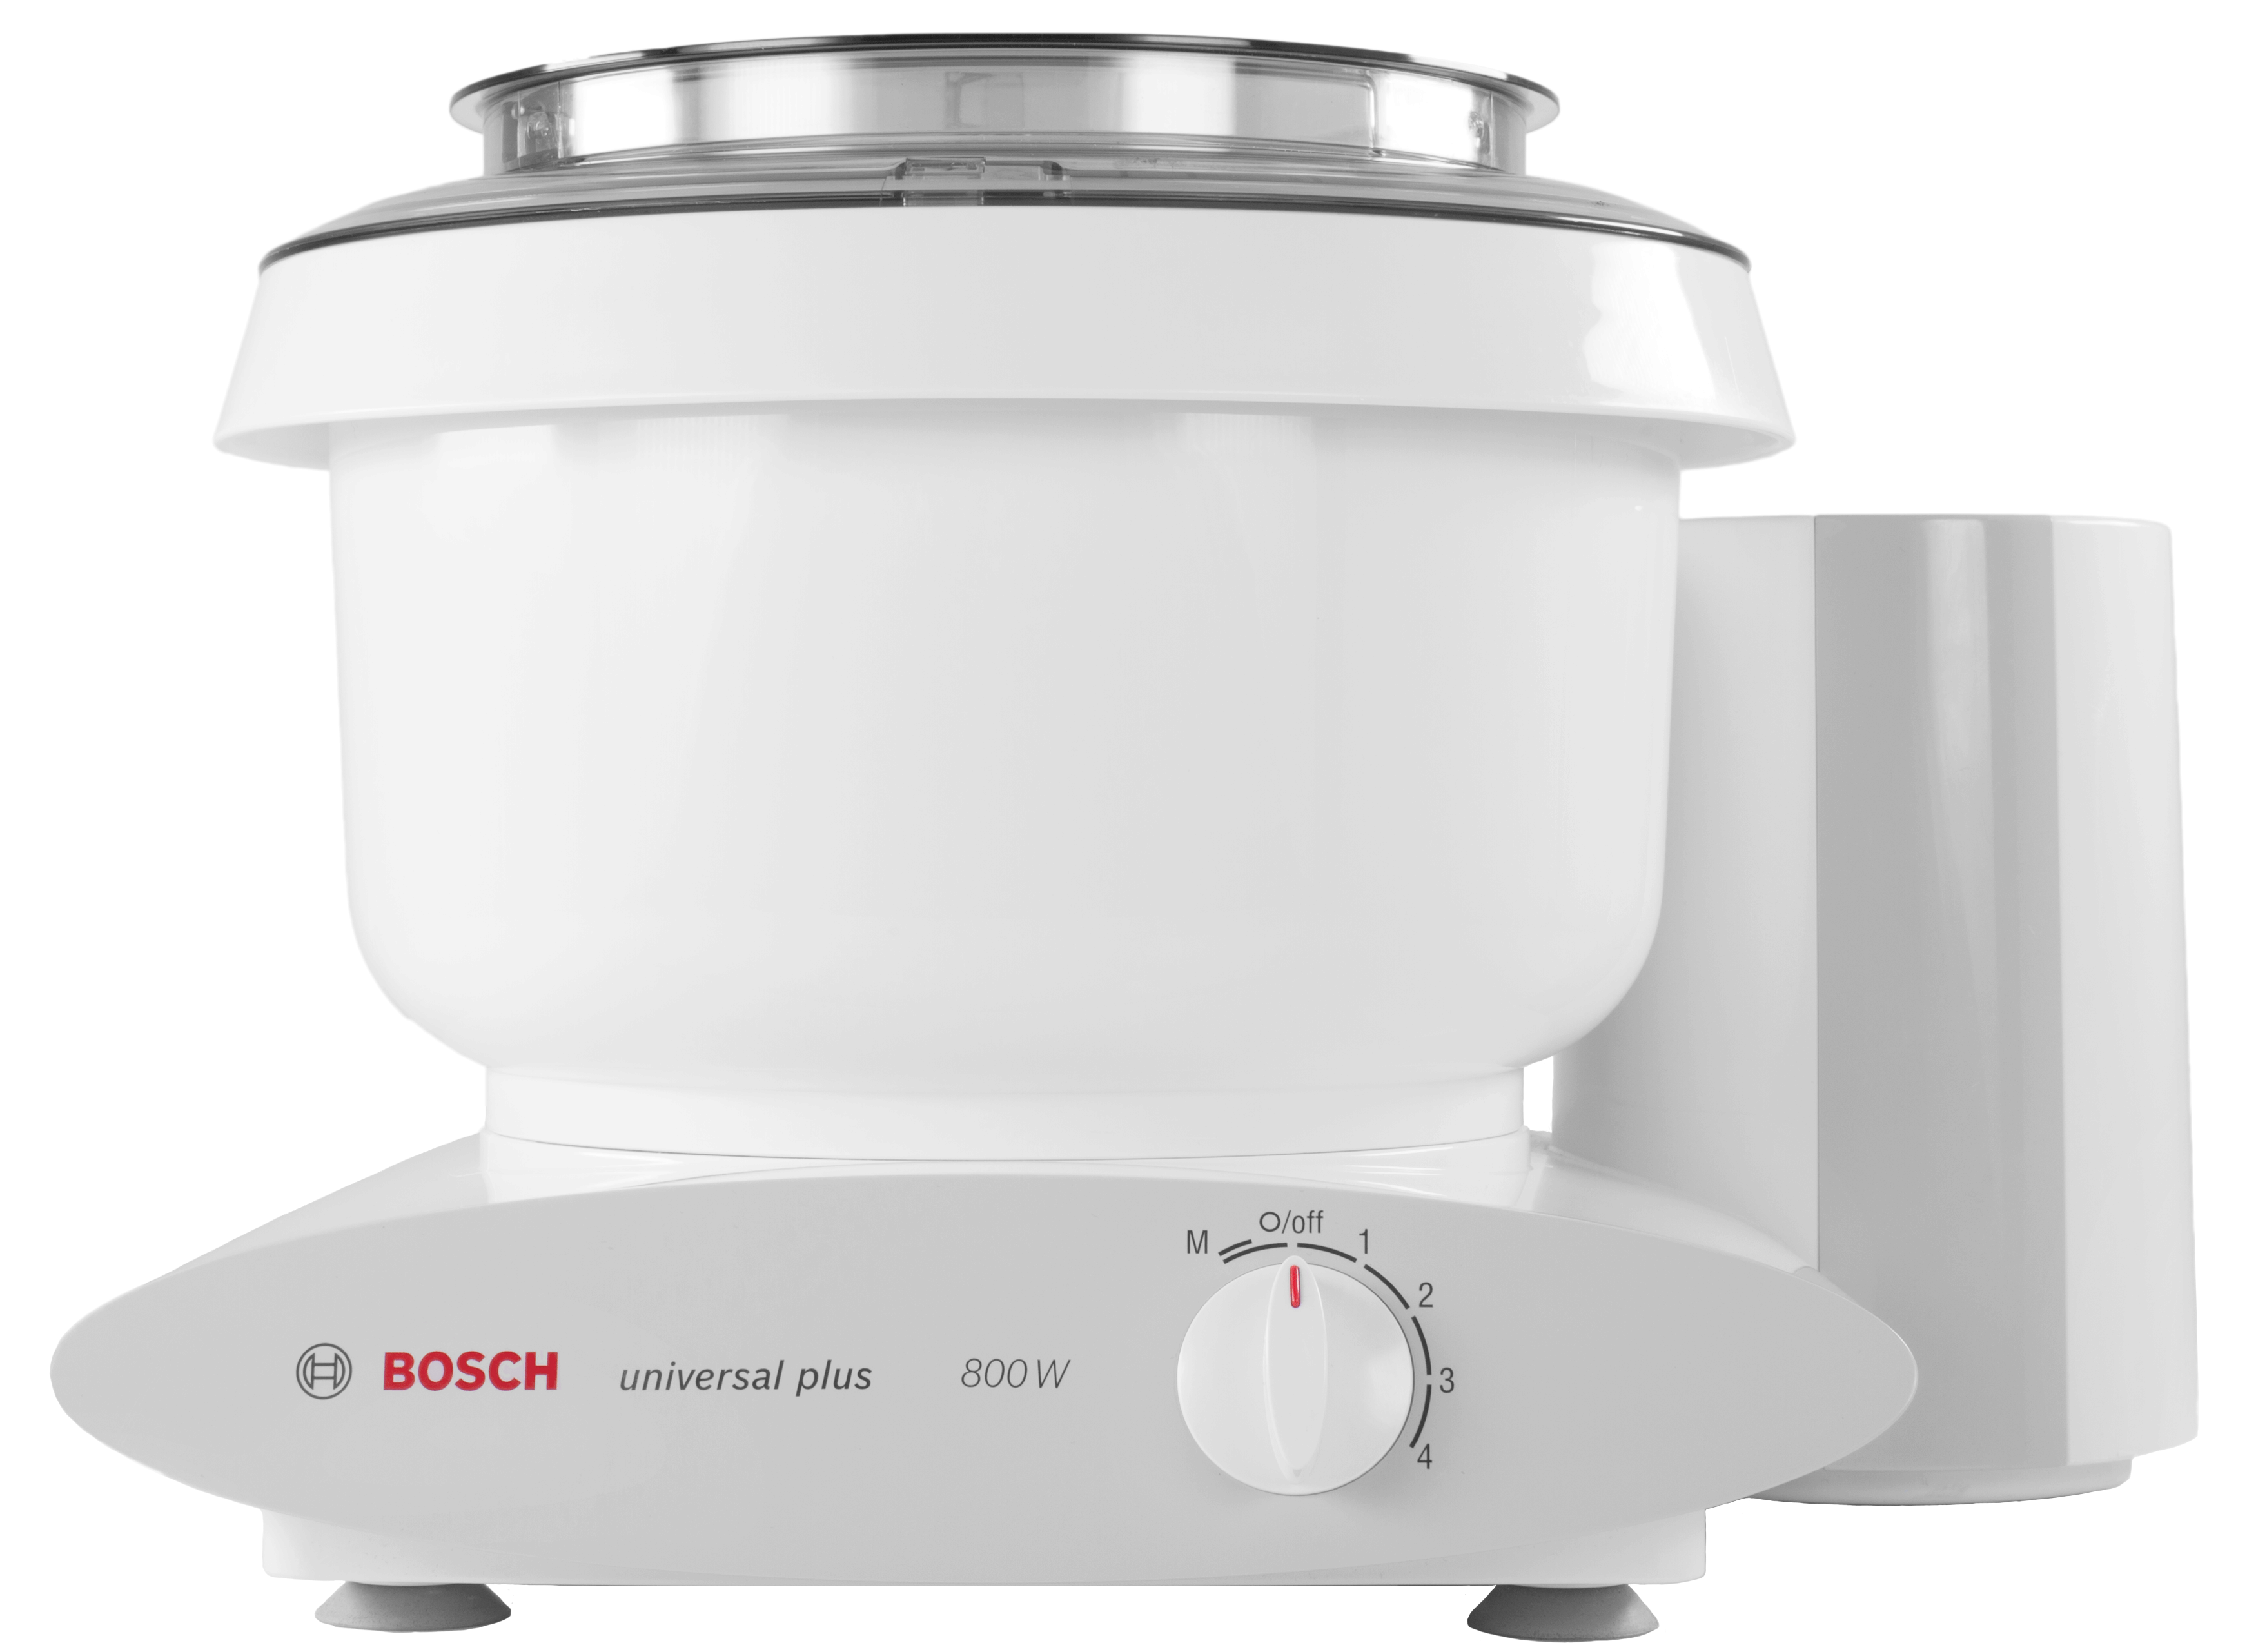 Bosch Mixers Usa